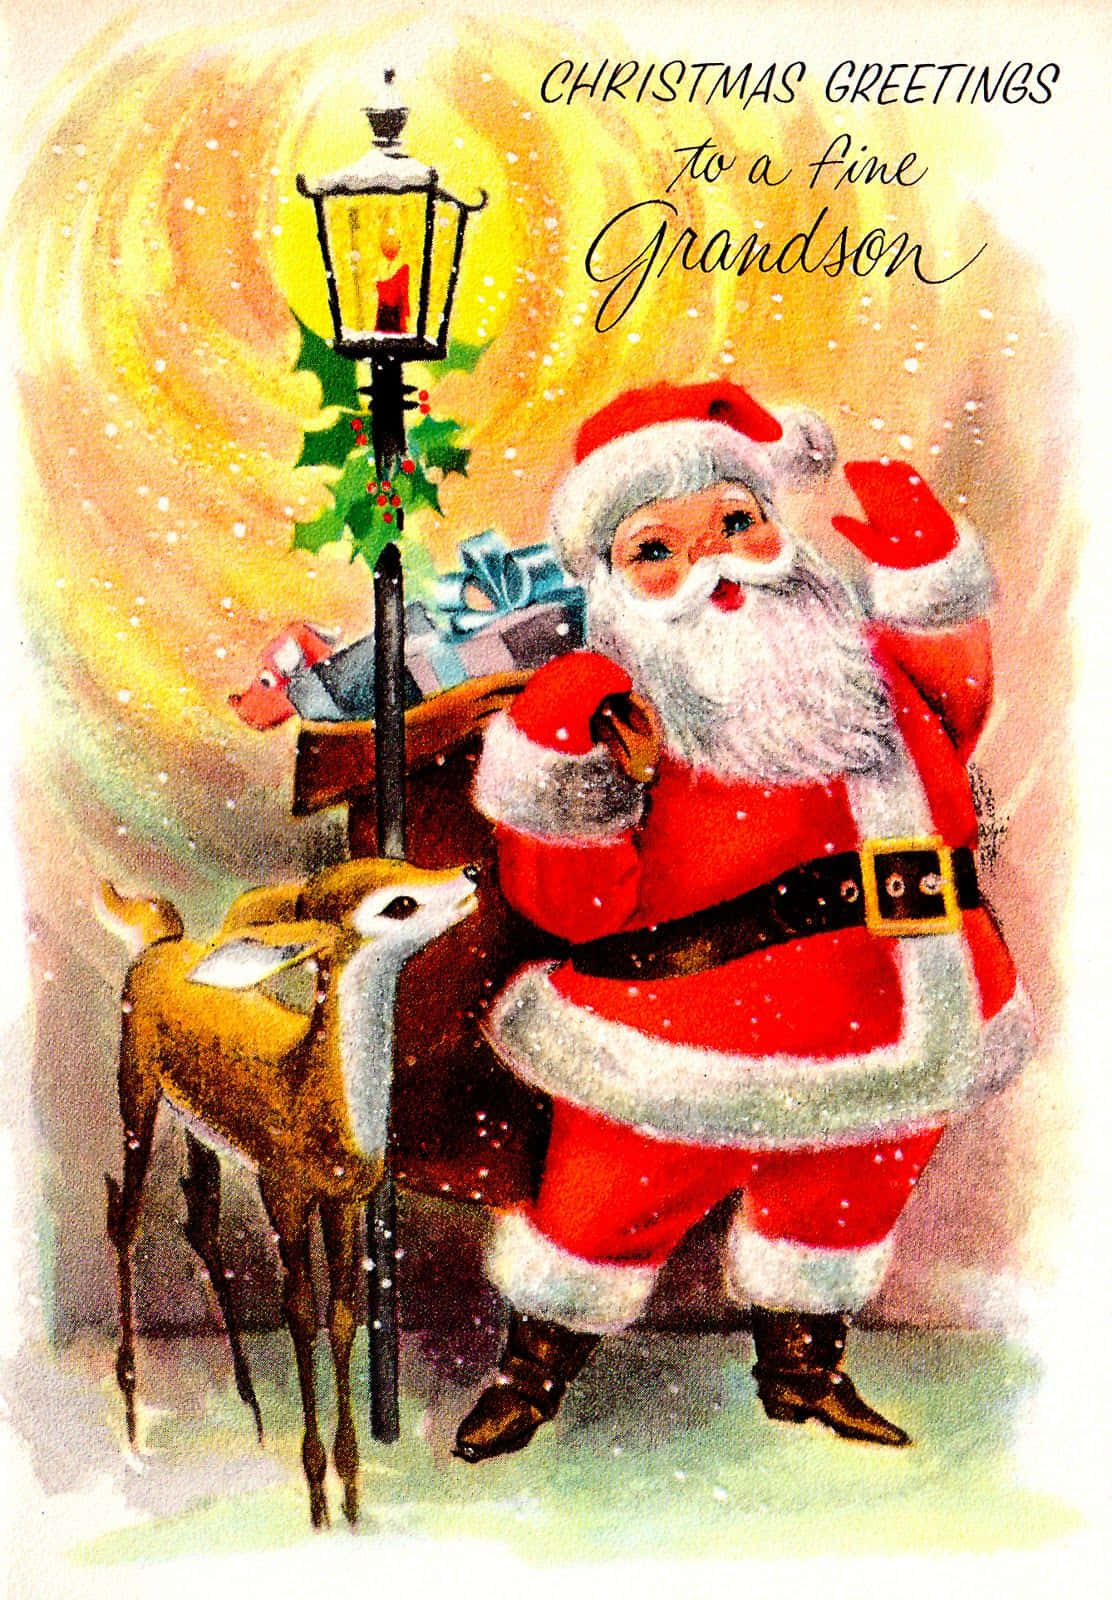 Einevintage Weihnachtskarte Mit Dem Weihnachtsmann Und Einem Hirsch. Wallpaper